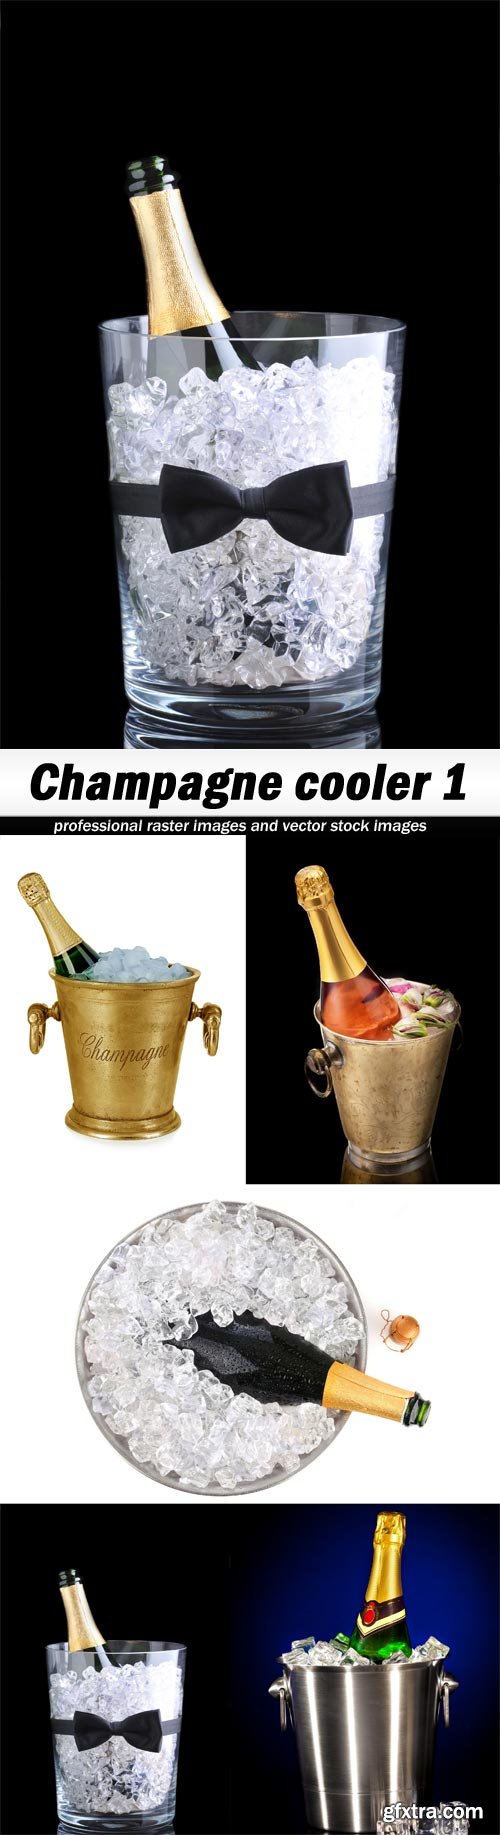 Champagne cooler 1 - 5 UHQ JPEG